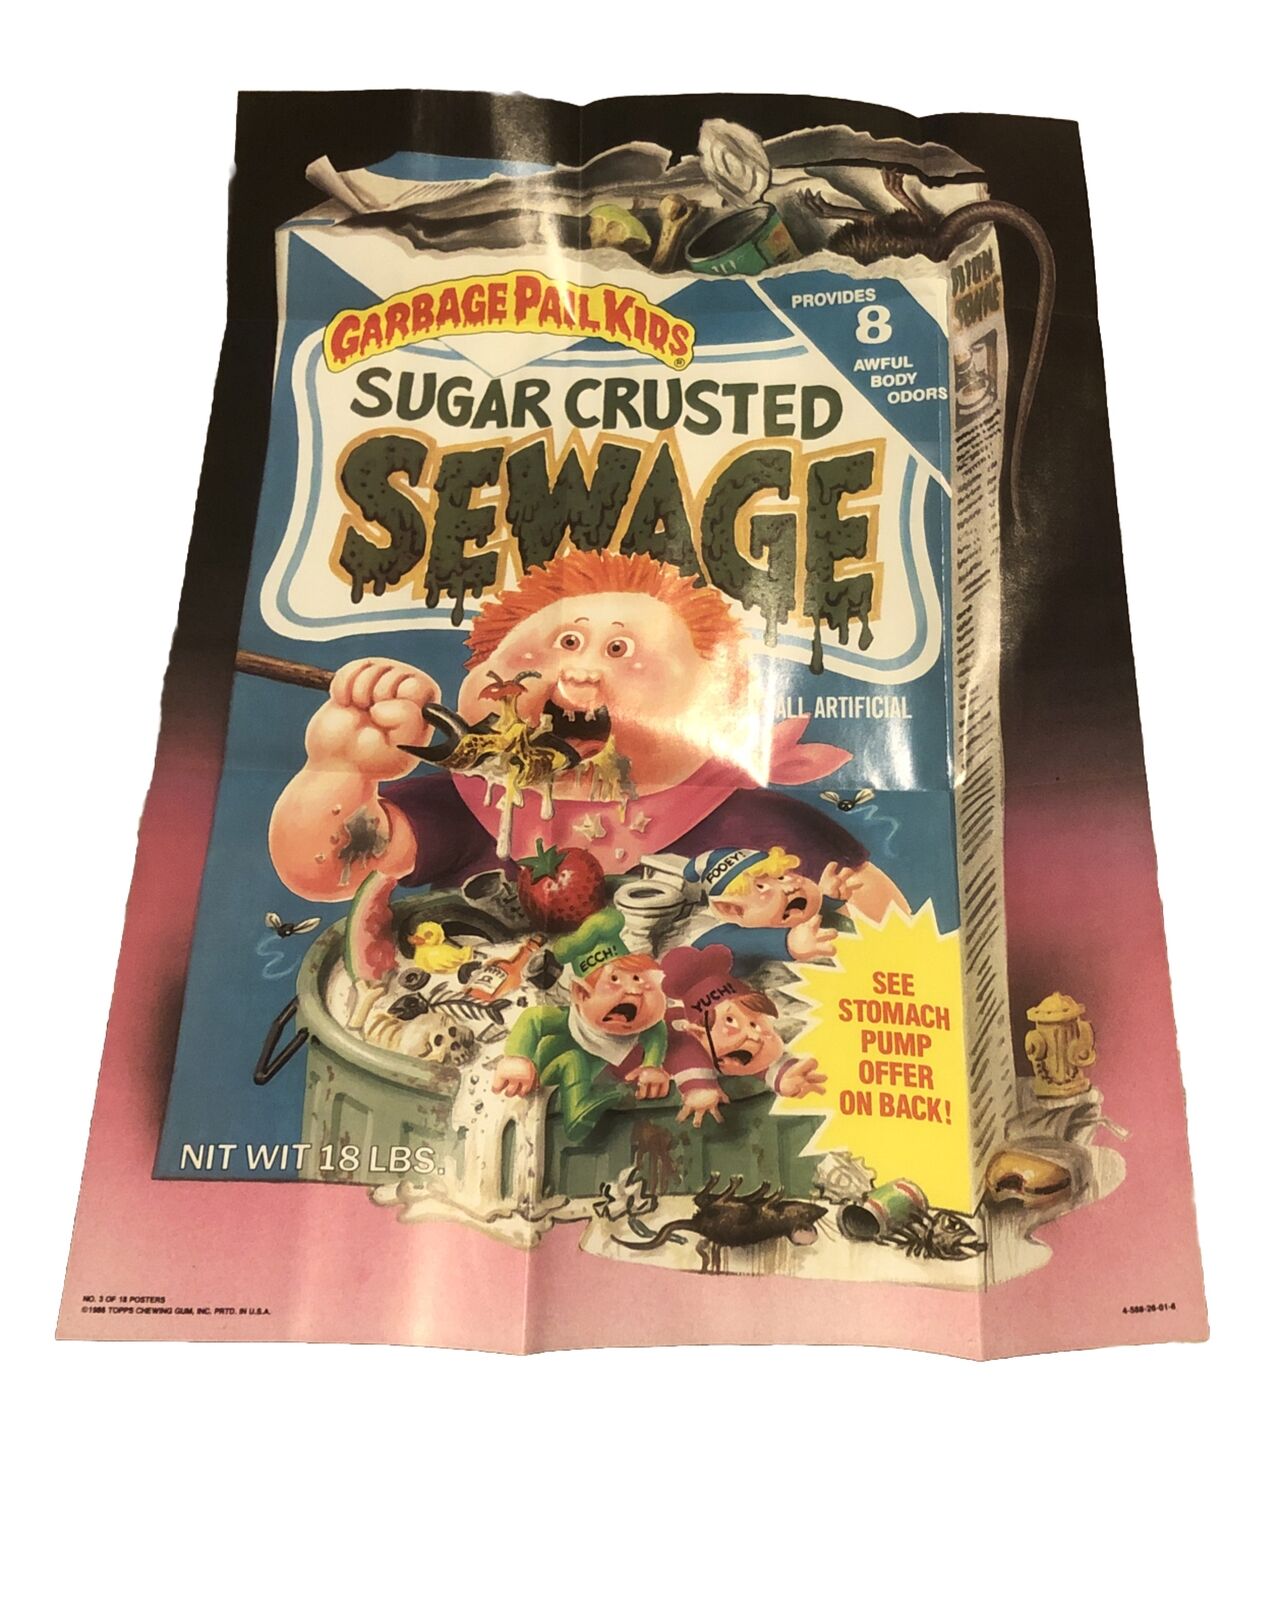 GPK Garbage Pail Kids Poster Pack Topps 1986 Sugar Crusted Sewage  #3 Poster